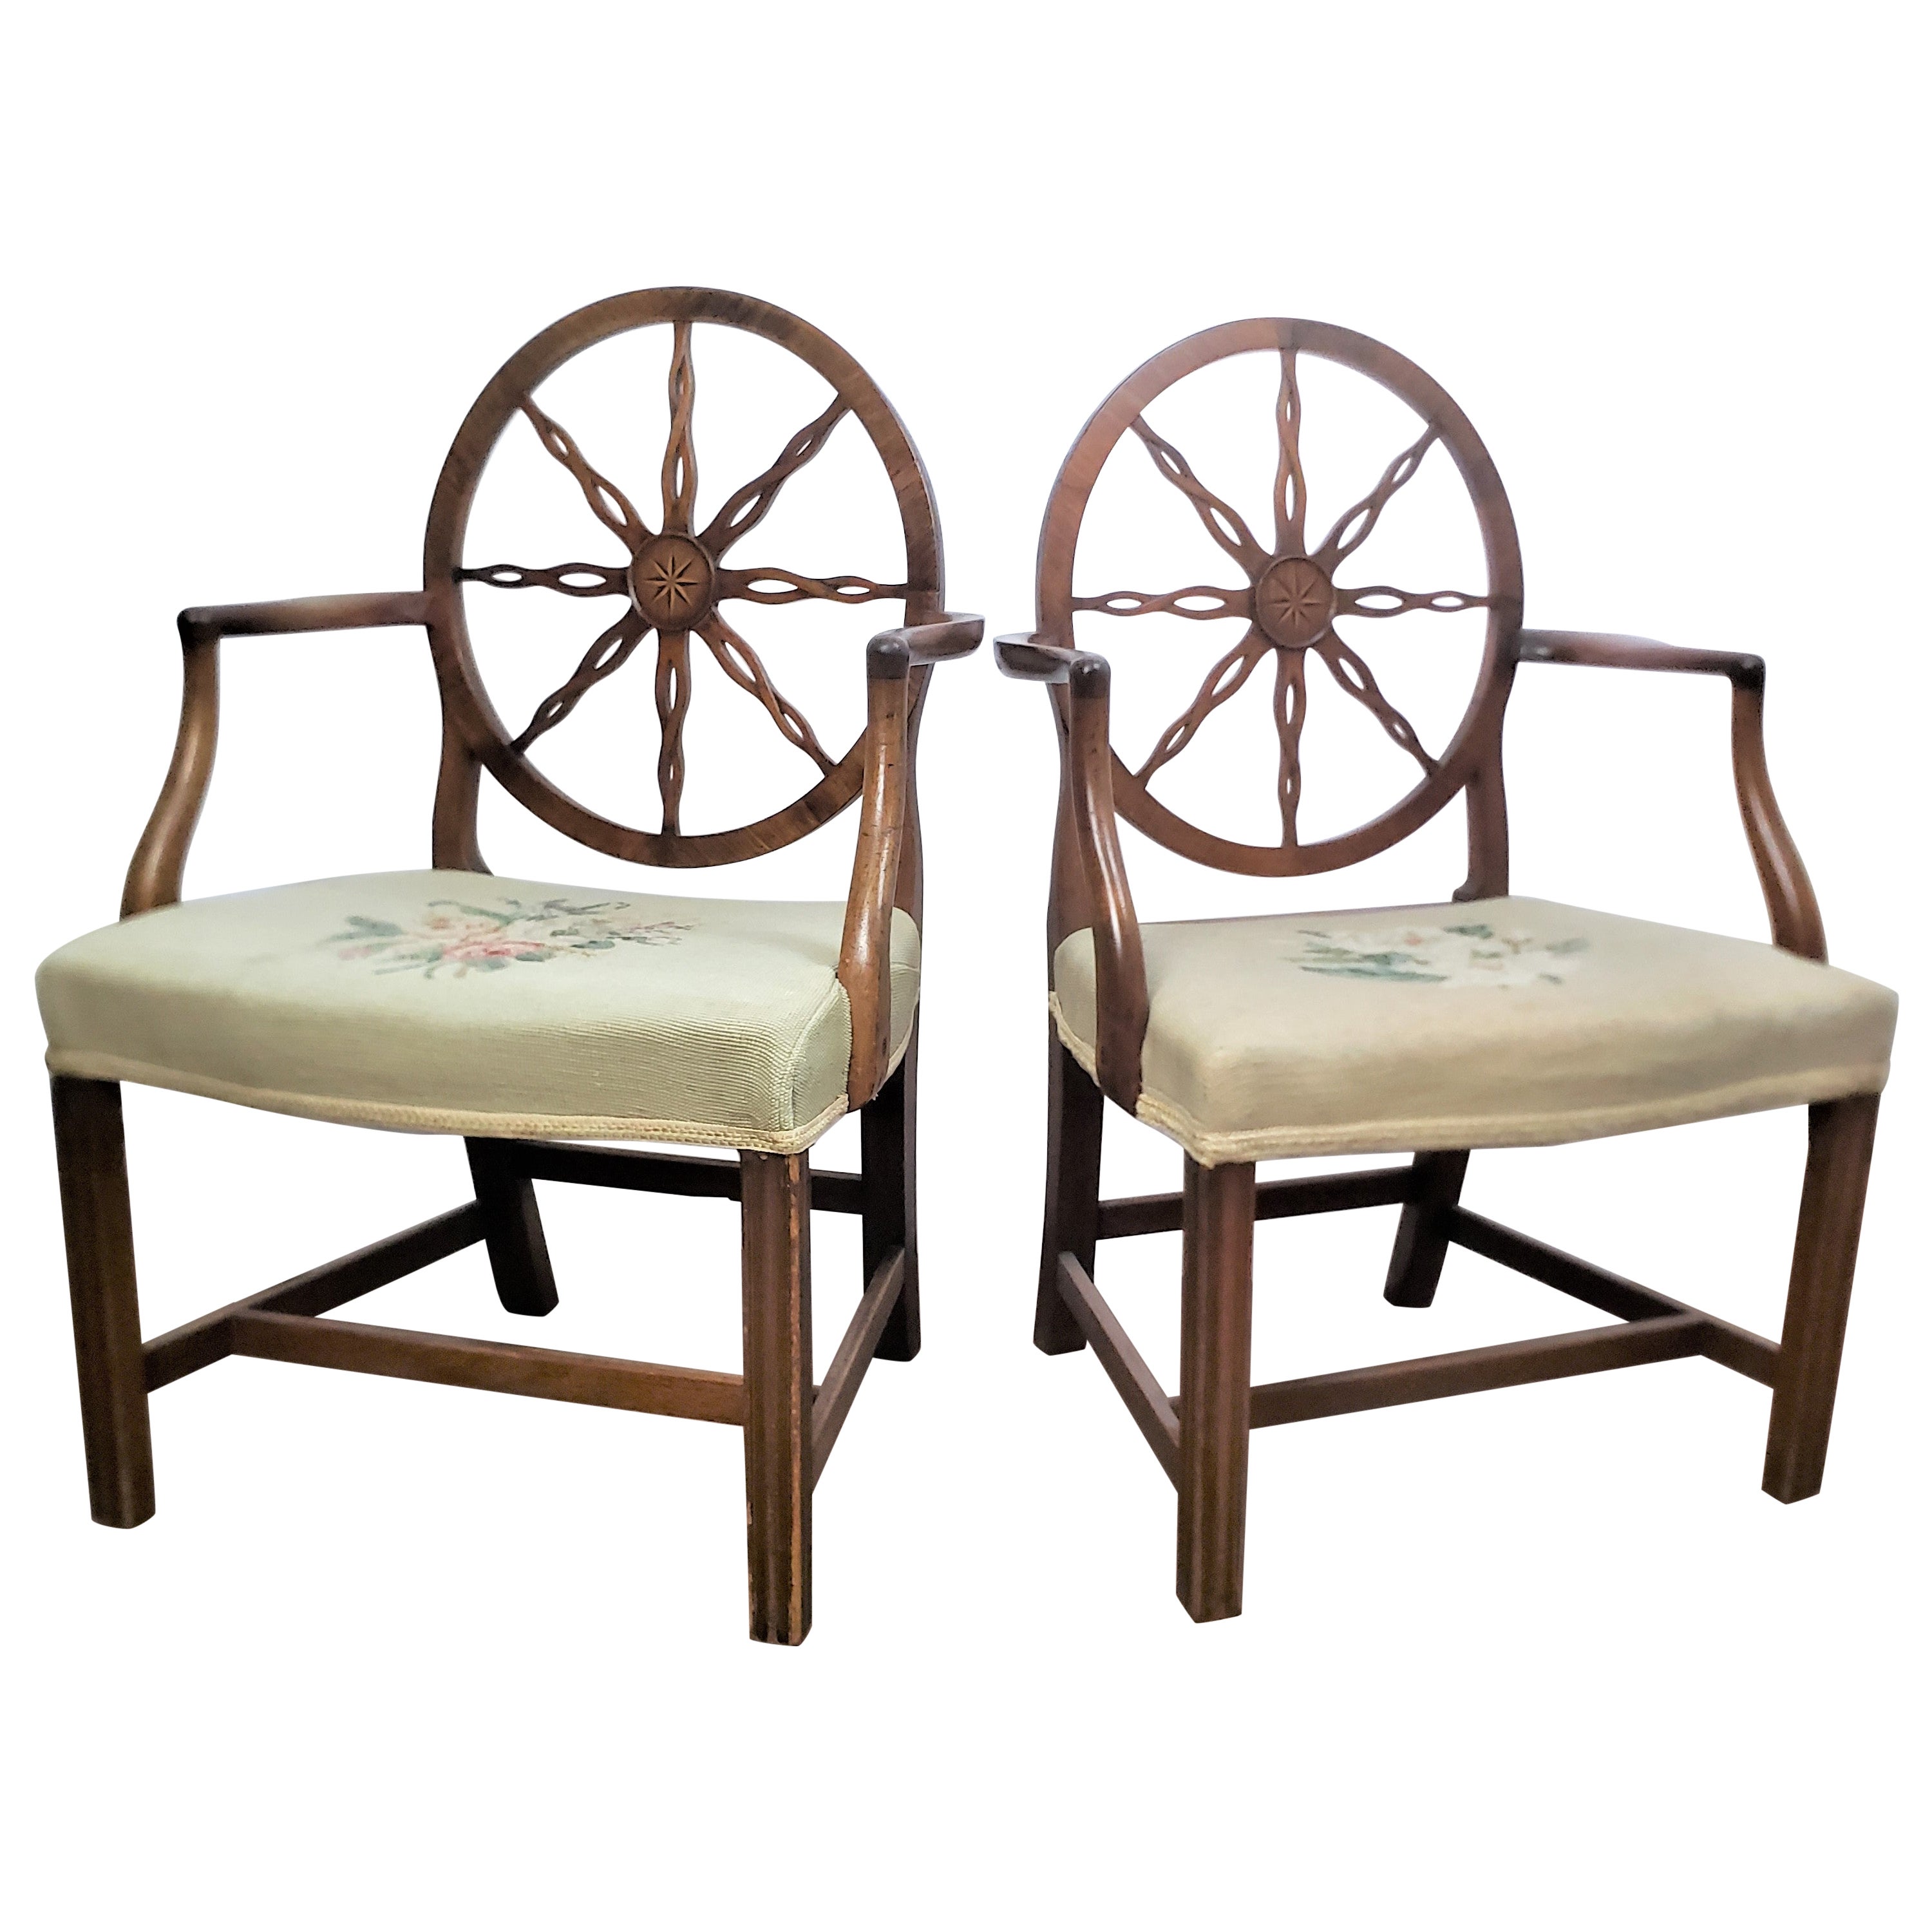 Paire de cadres de fauteuils ou de chaises d'appoint antiques à roulettes, datant de la période du roi George III